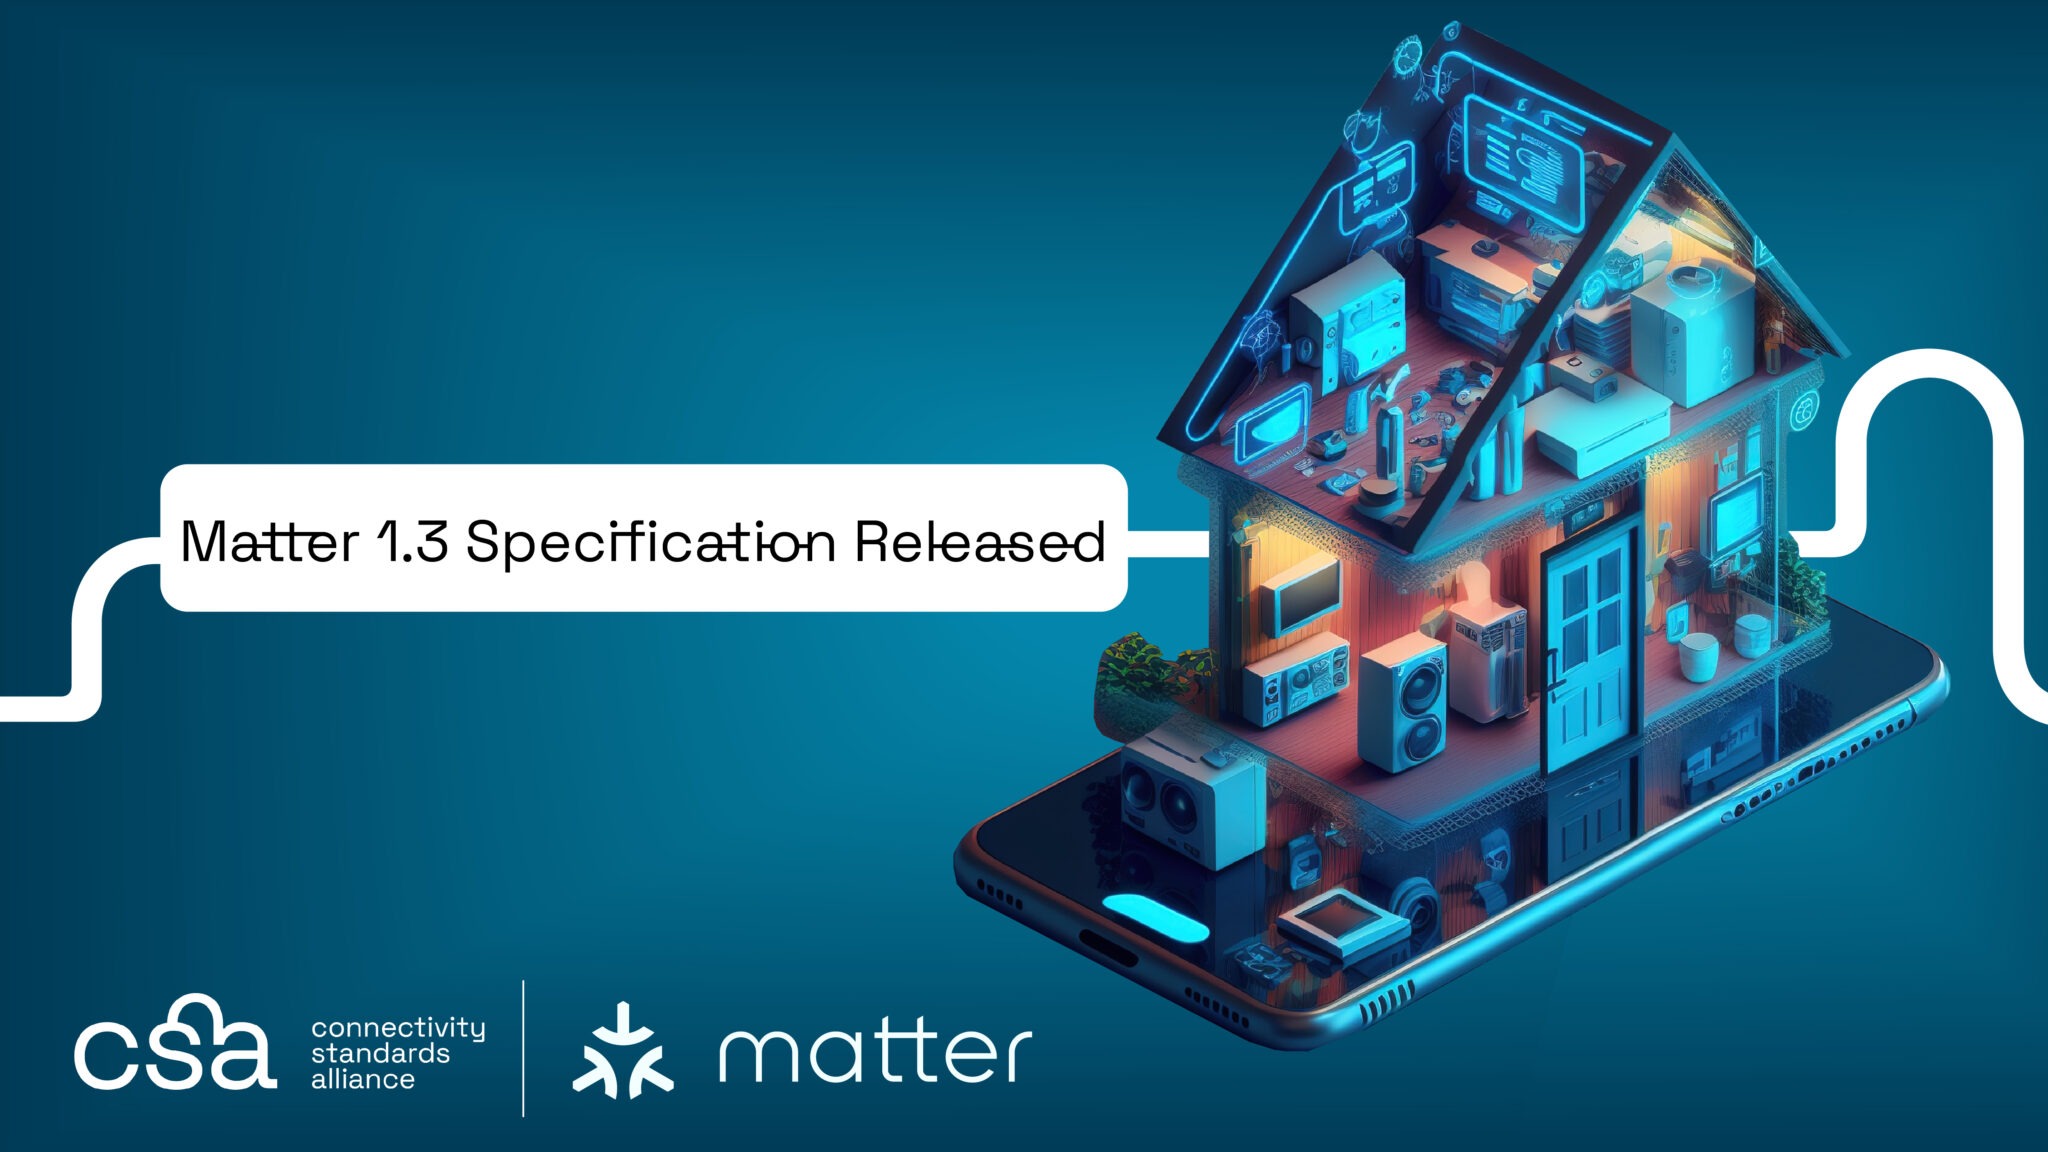 Matter 1.3 ile Akıllı Ev Teknolojileri İlerlemesini Sürdürüyor